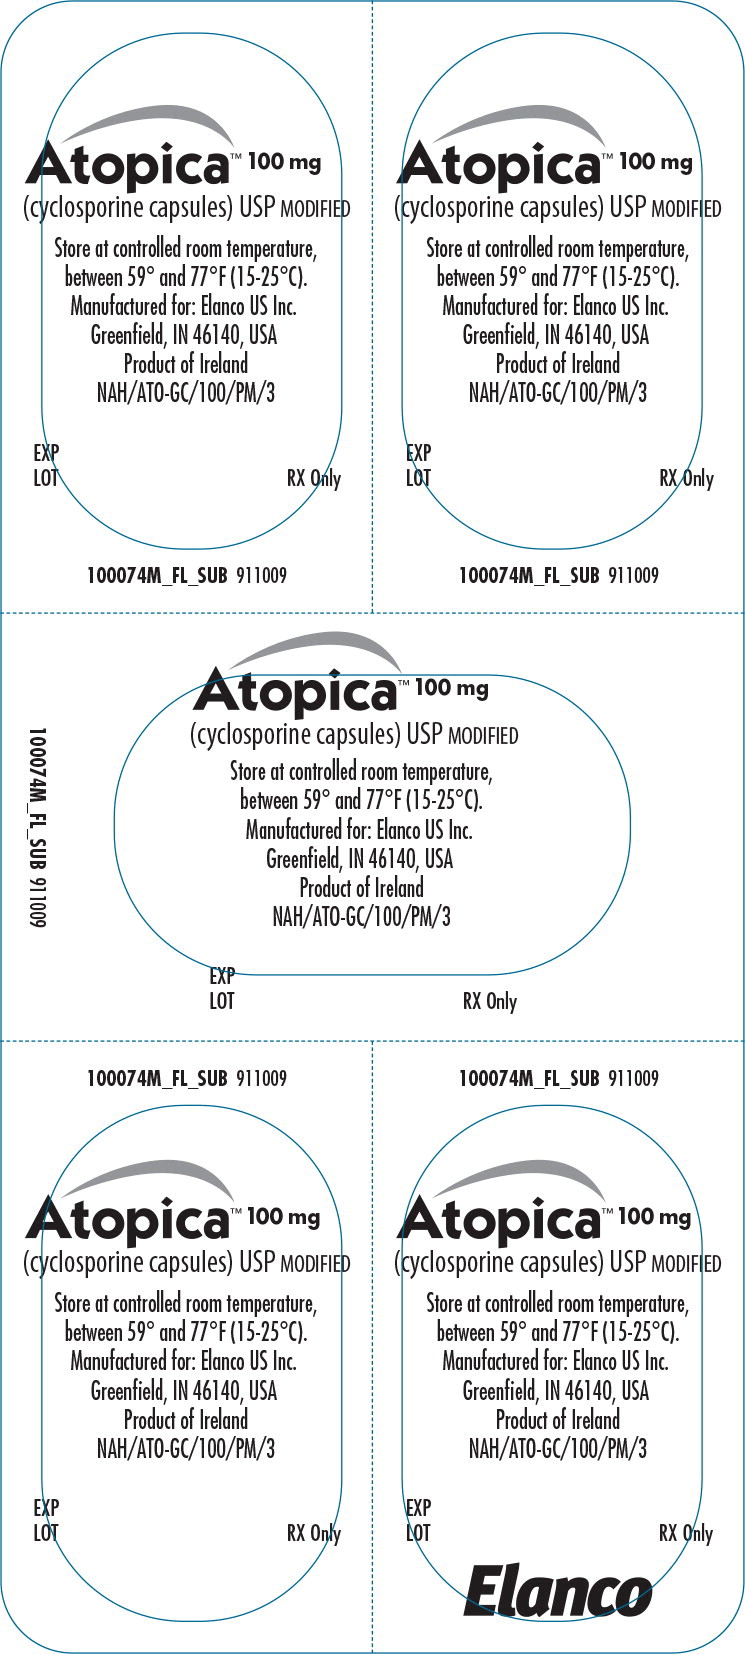 Principal Display Panel - Atopica 100mg Blister Label - ato02 0002 09